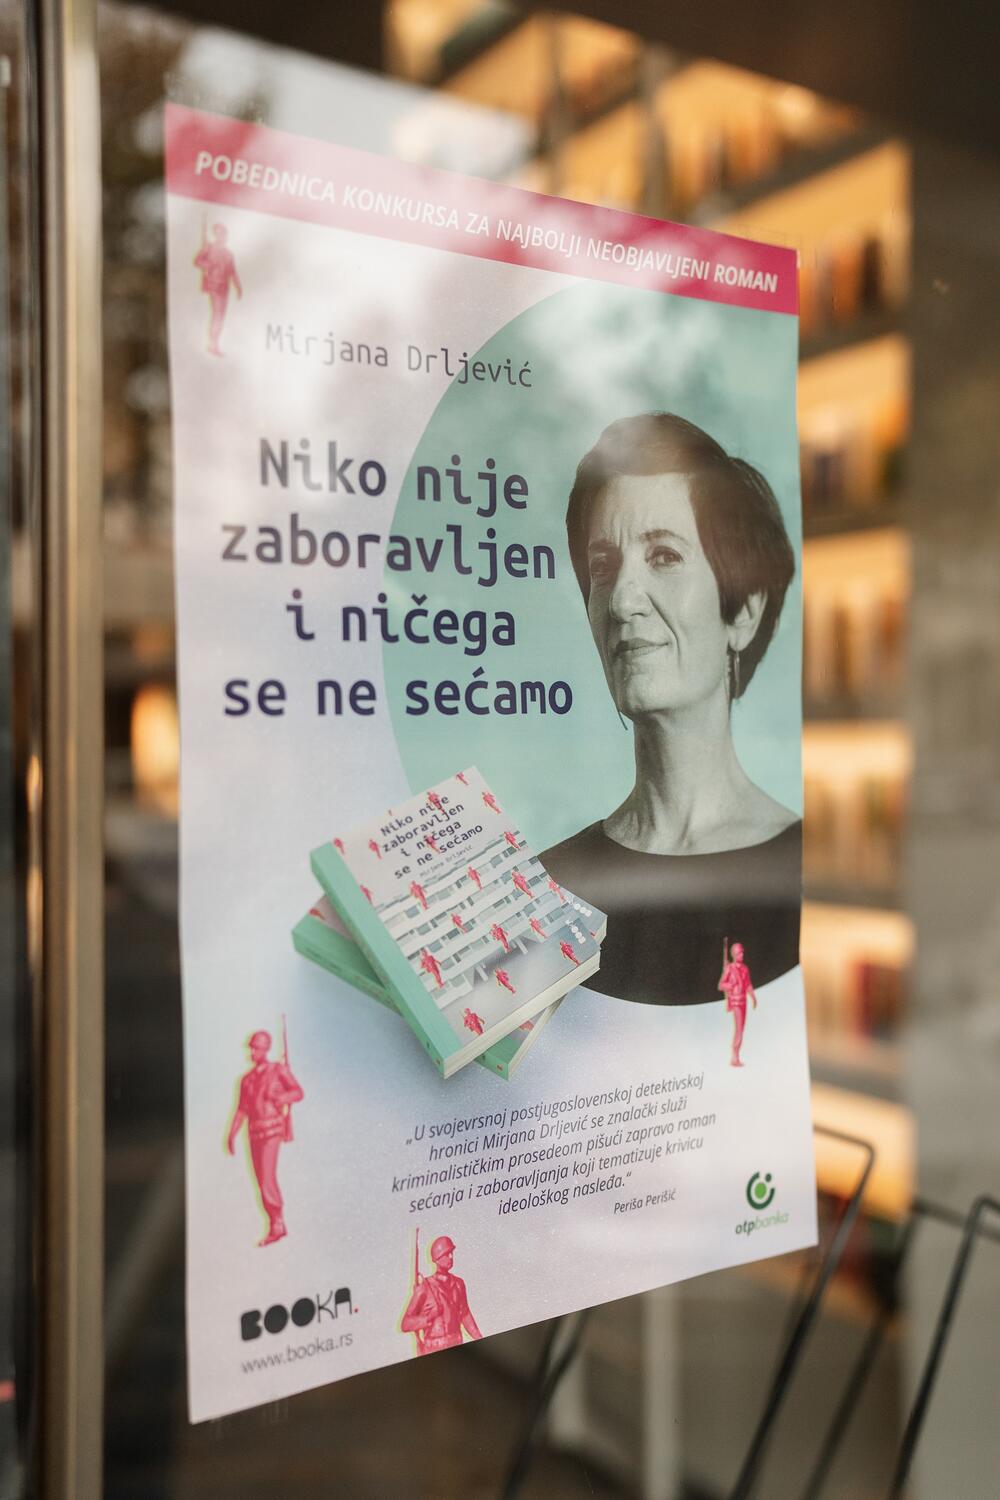 Književni konkurs izdavačke kuće Booka, Mirjana Drljević, roman Niko nije zaboravljen i ničega se ne sećamo